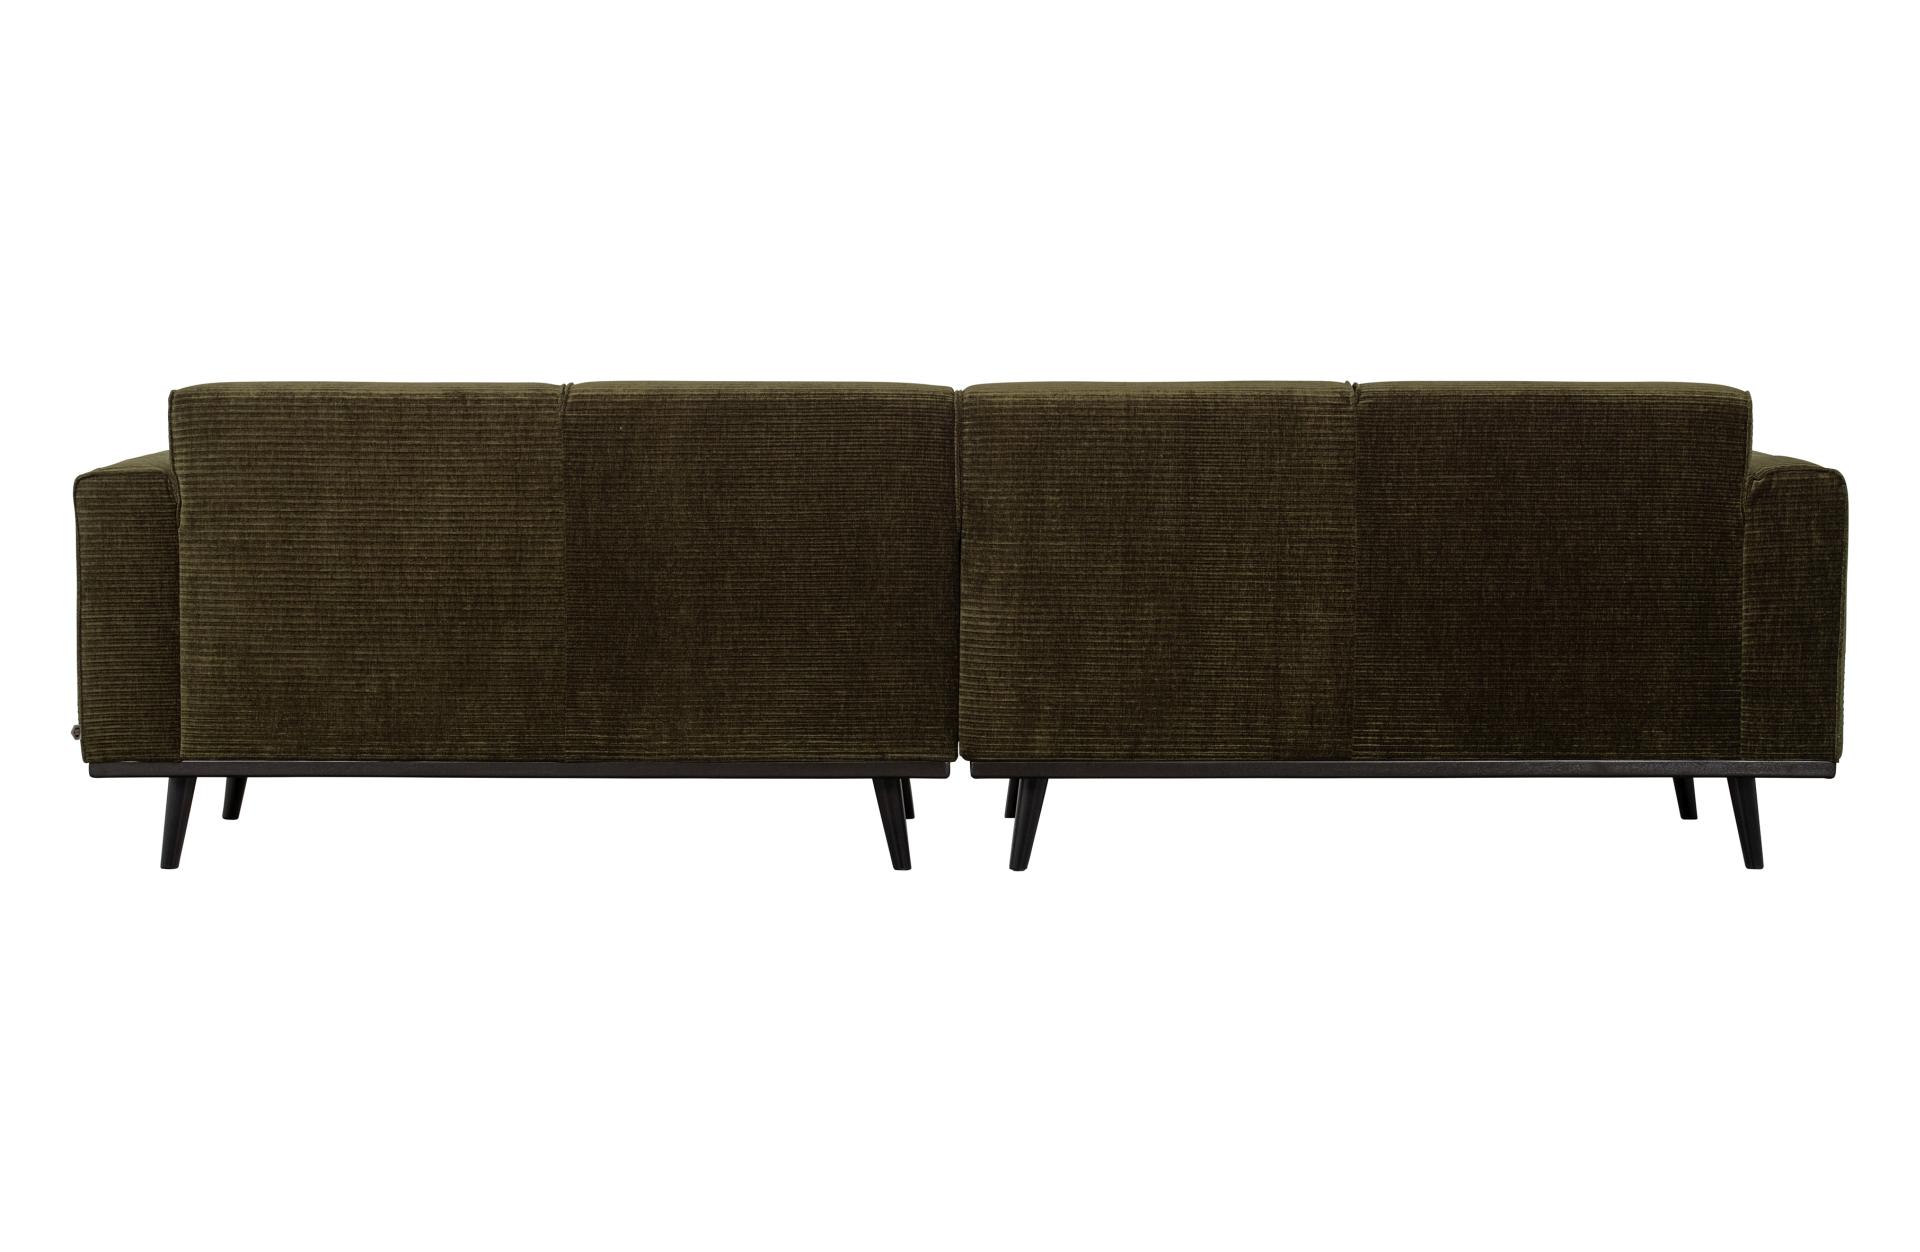 Das Sofa Statement überzeugt mit seinem modernen Design. Gefertigt wurde es aus gewebten Jacquard, welches einen Olive Farbton besitzen. Das Gestell ist aus Birkenholz und hat eine schwarze Farbe. Das Sofa hat eine Breite von 280 cm.